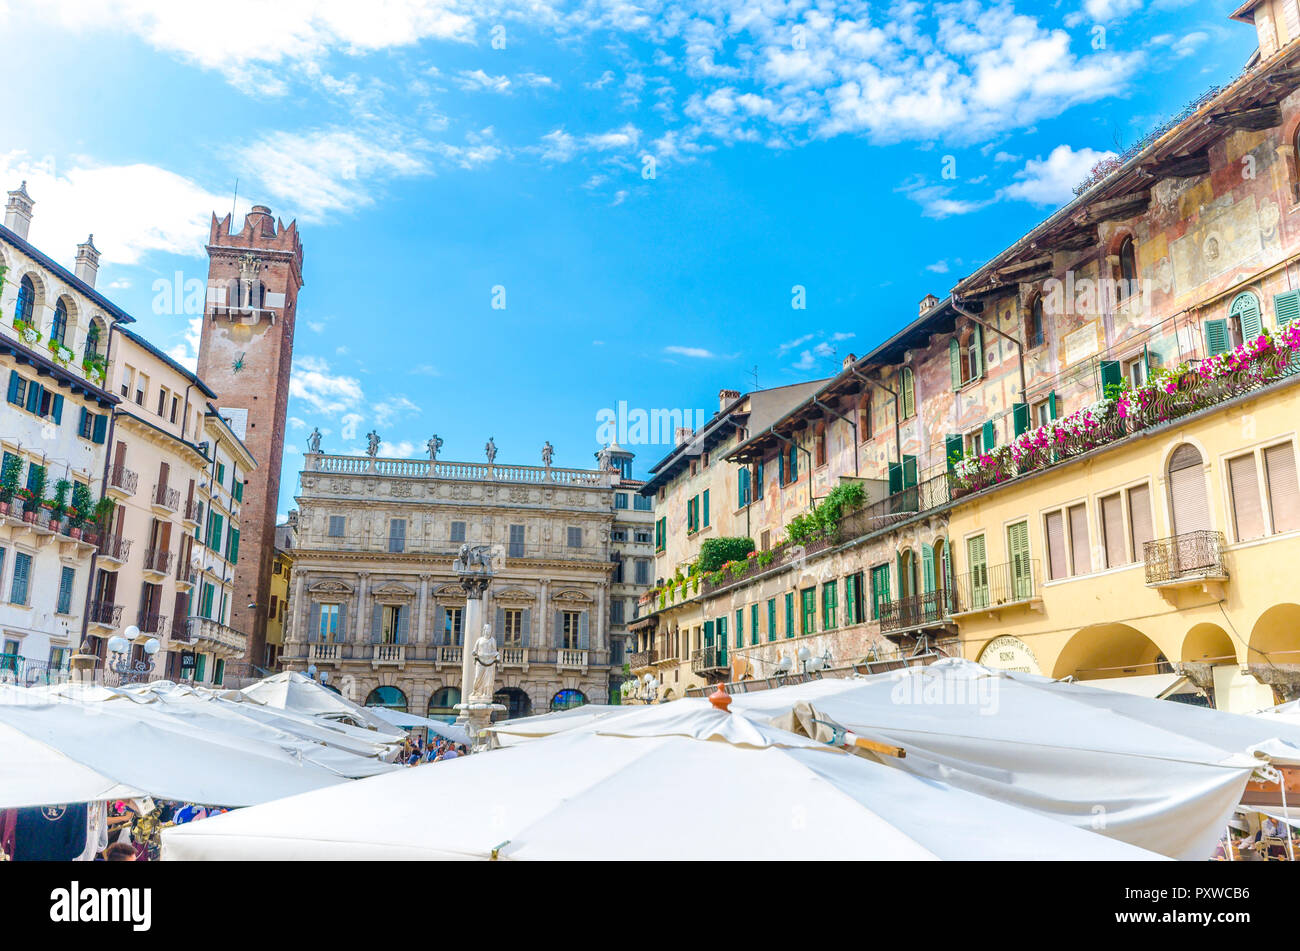 L'Italia, Verona, vista di Piazza delle Erbe con bancarelle e la Torre del Gardello in background Foto Stock